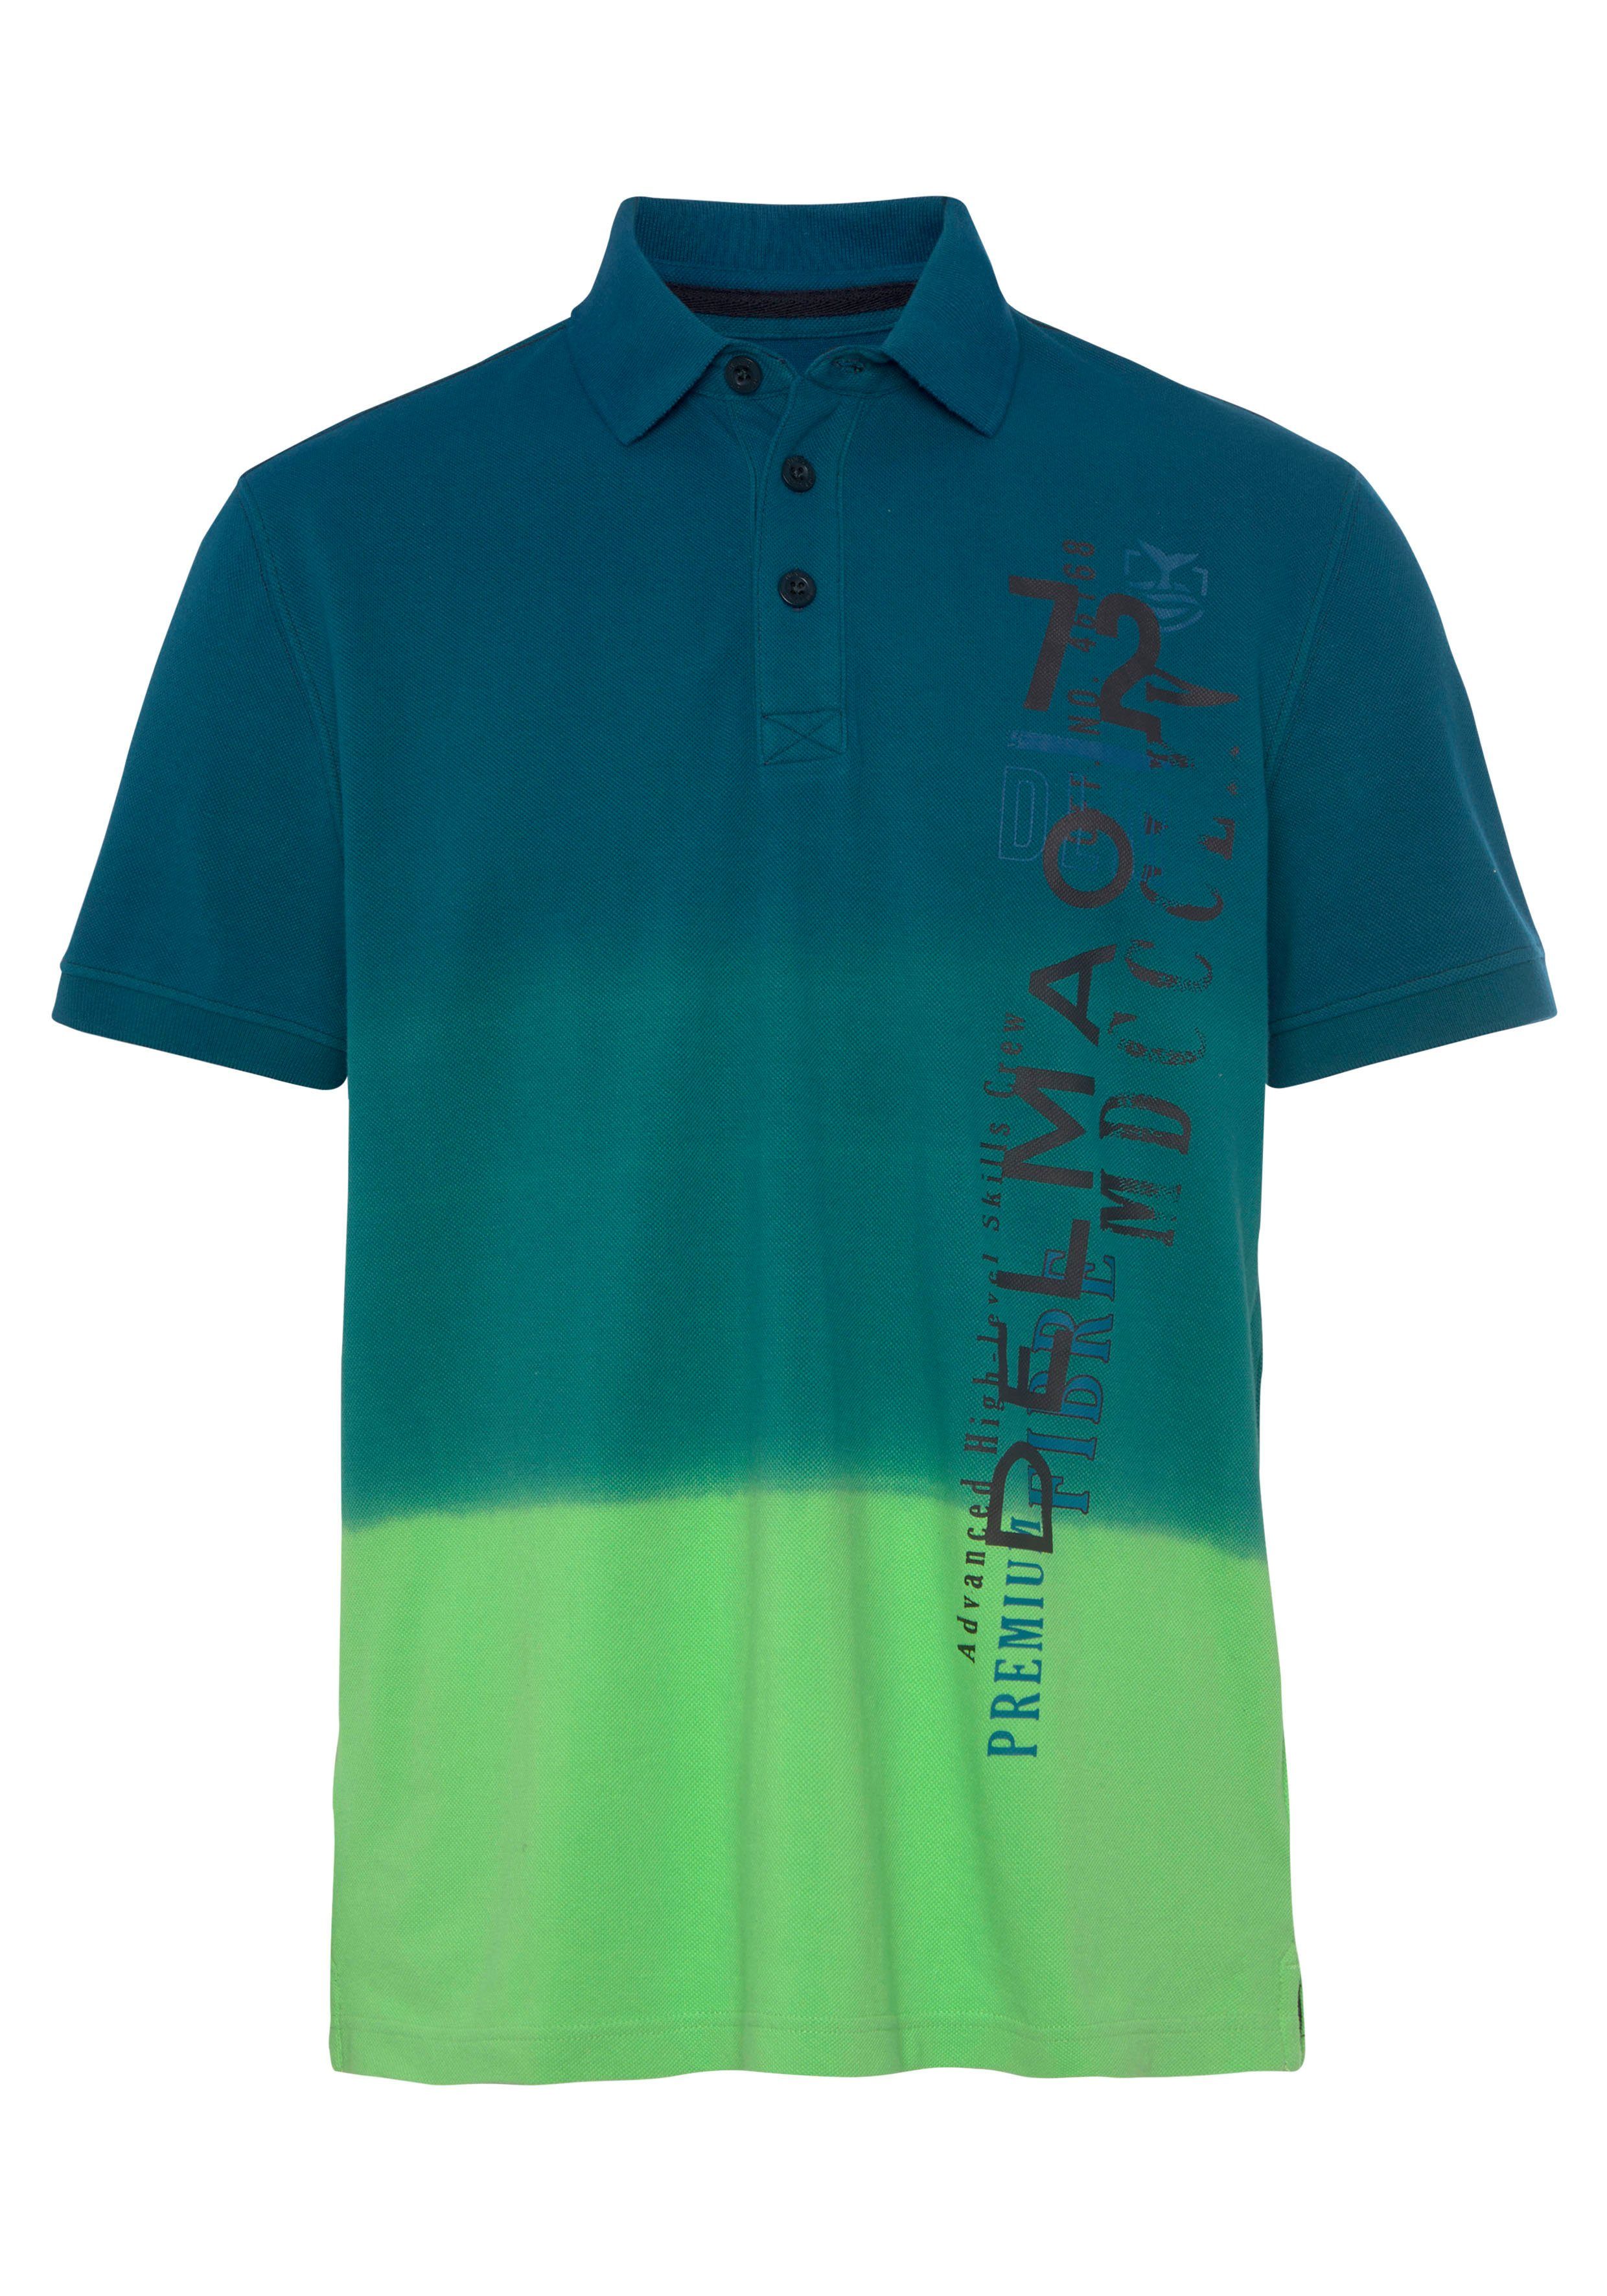 DELMAO Print- NEUE modischem mit Poloshirt MARKE! und Farbverlauf